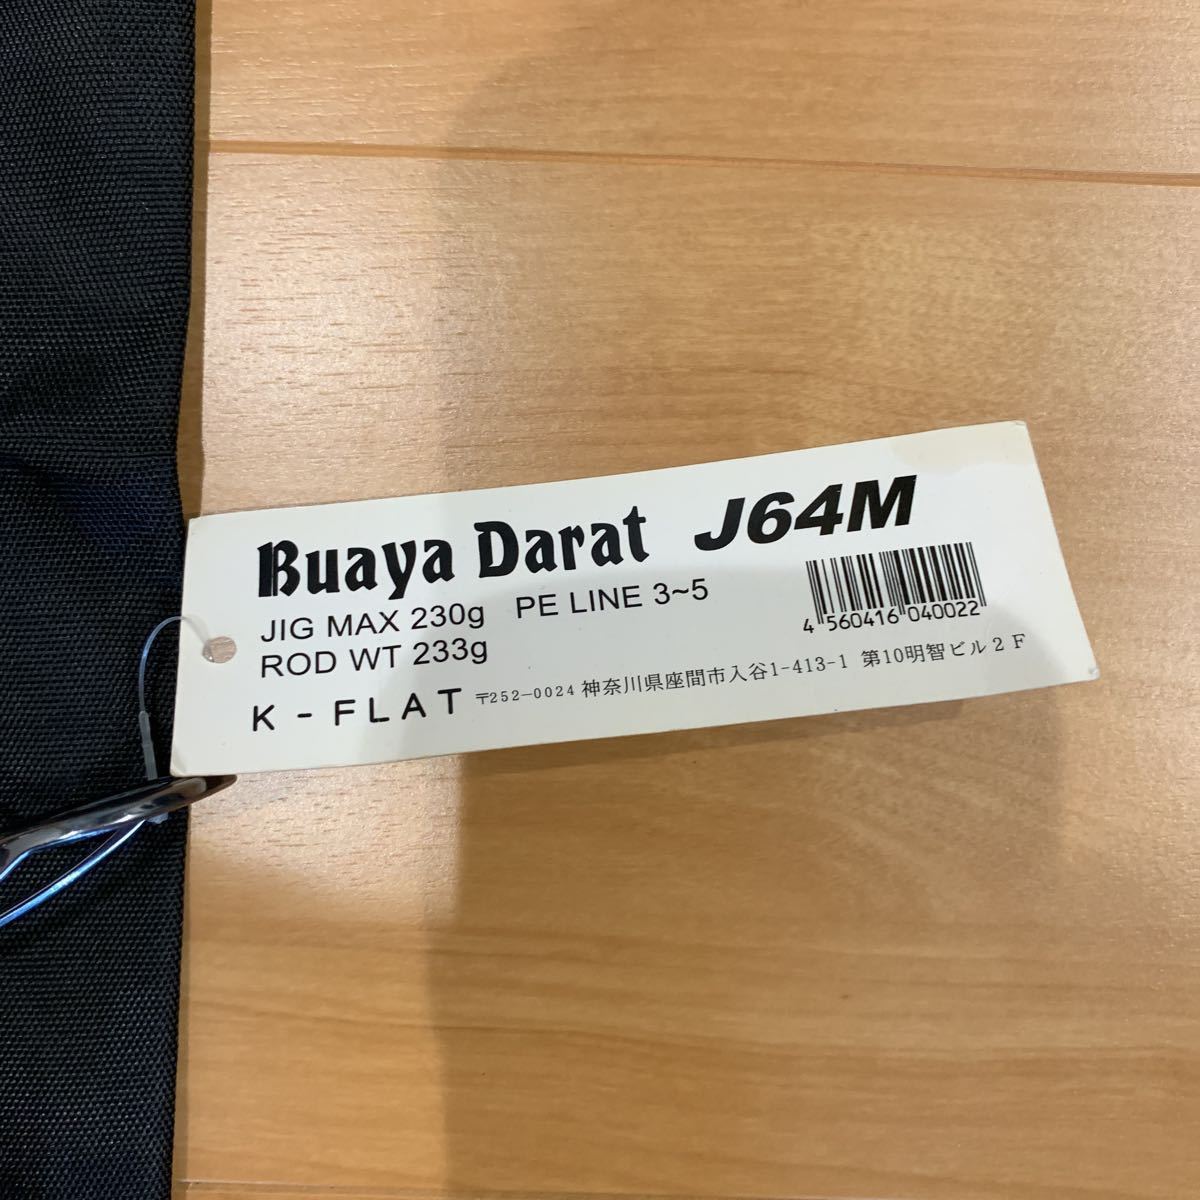 未使用 展示品 特価 K-FLAT Buaya Darat J64M Kei Hiramatsu ブアヤ ダラット フラットジギング ブリ ヒラマサ  マグロ 人気機種 その1